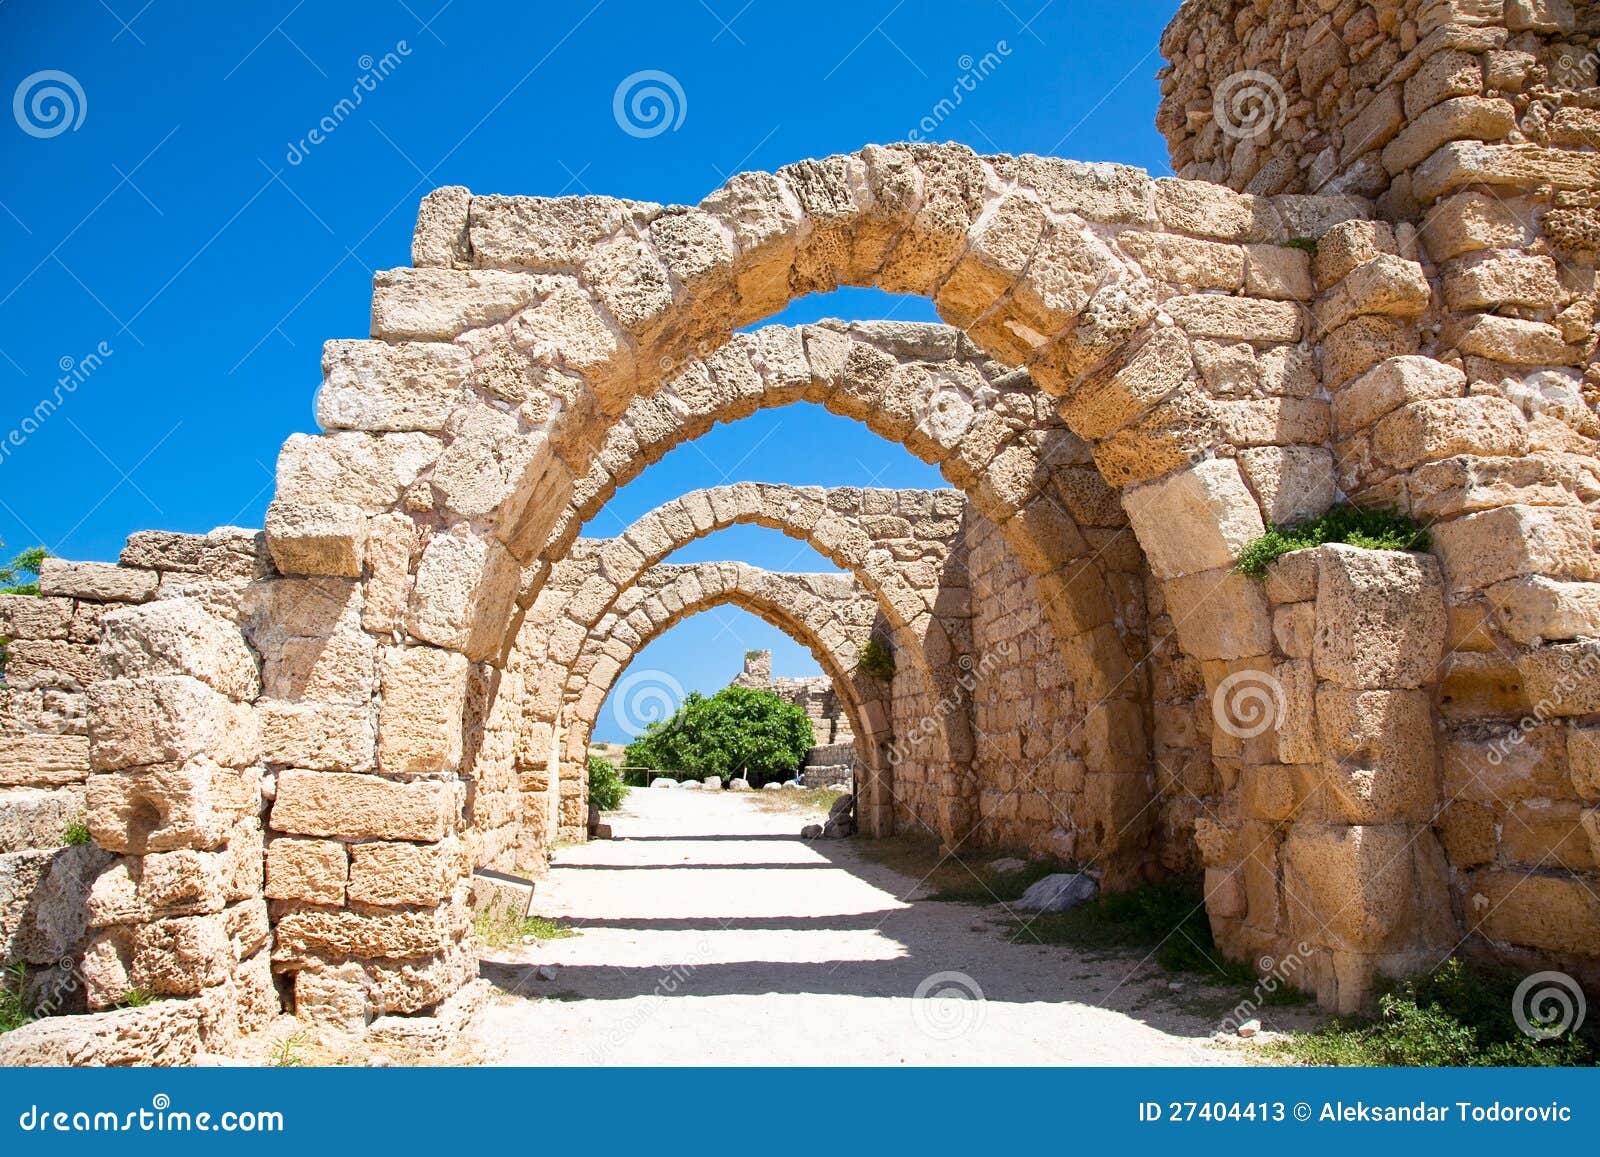 ruins of antique caesarea. israel.